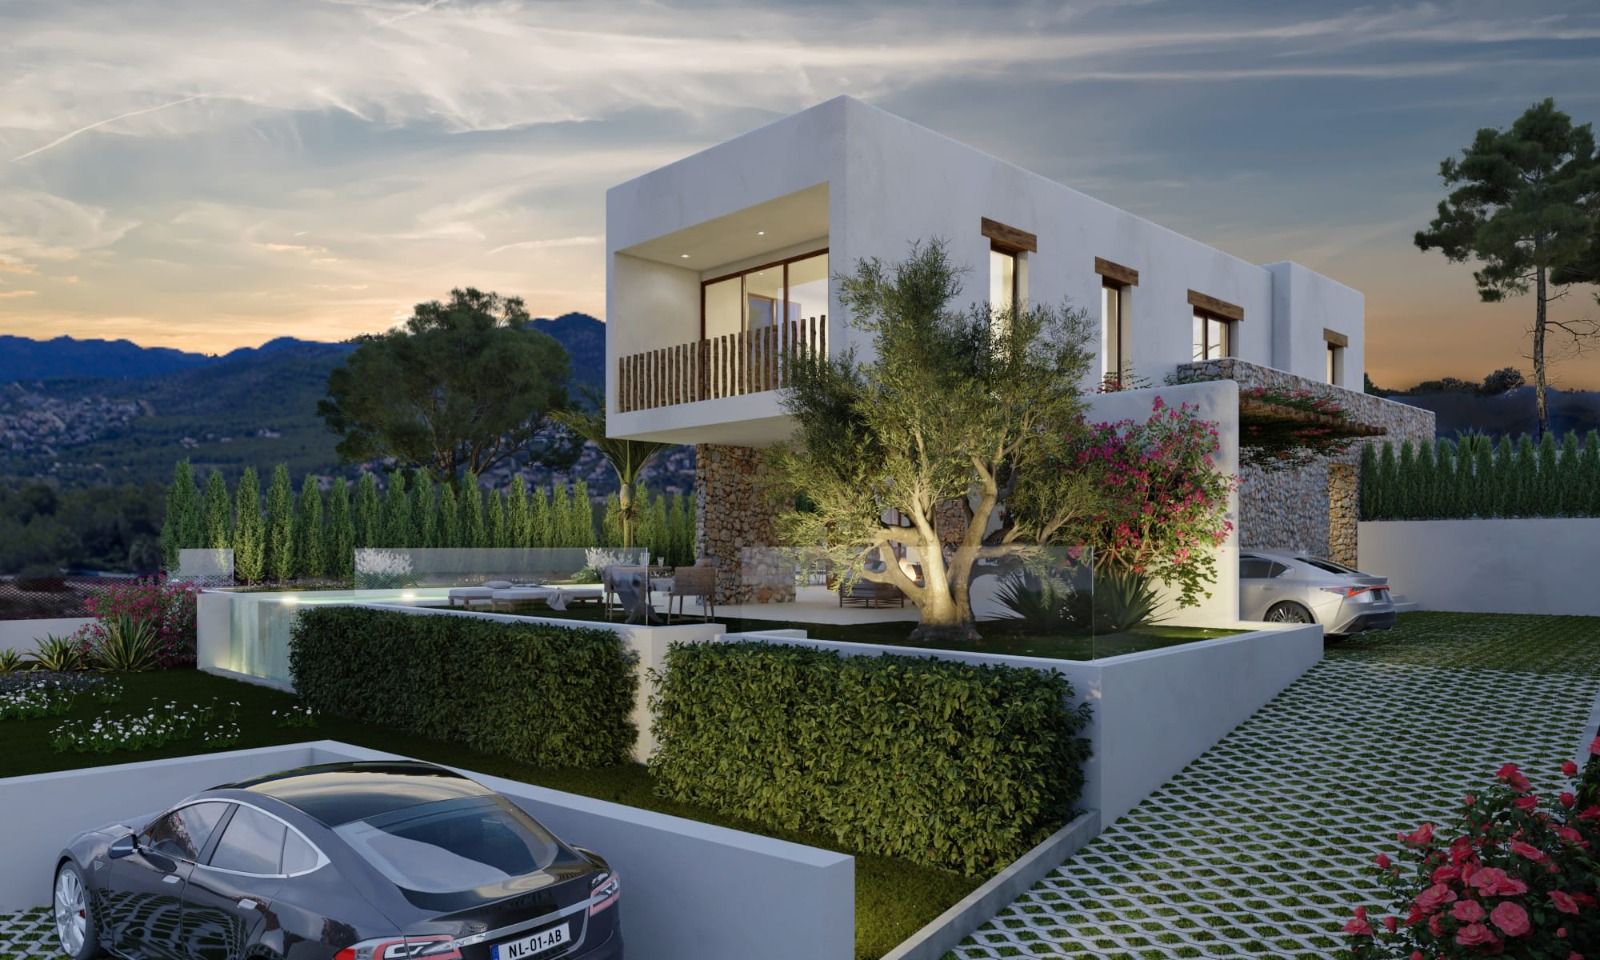 New build Ibizan style villa for sale in Las Laderas Jávea, Costa Blanca